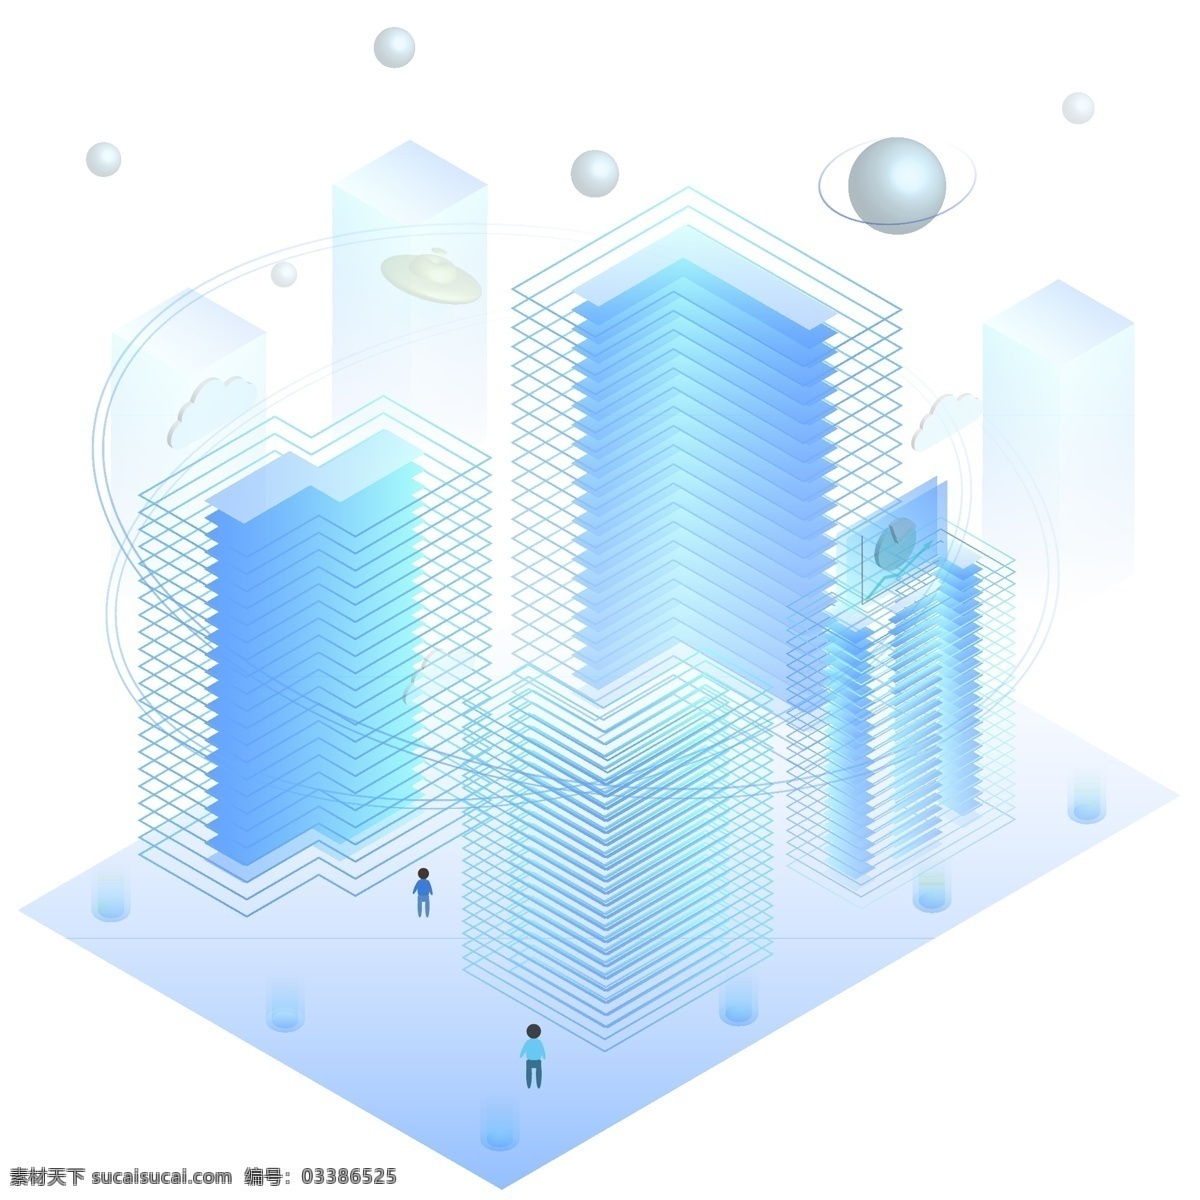 d 线性 城市 蓝色 渐变 未来 科技 智慧 星球 建筑 蓝色渐变 2.5d 原创 线性城市 未来城市 未来科技 科技城市 智慧城市 飞碟 装饰元素